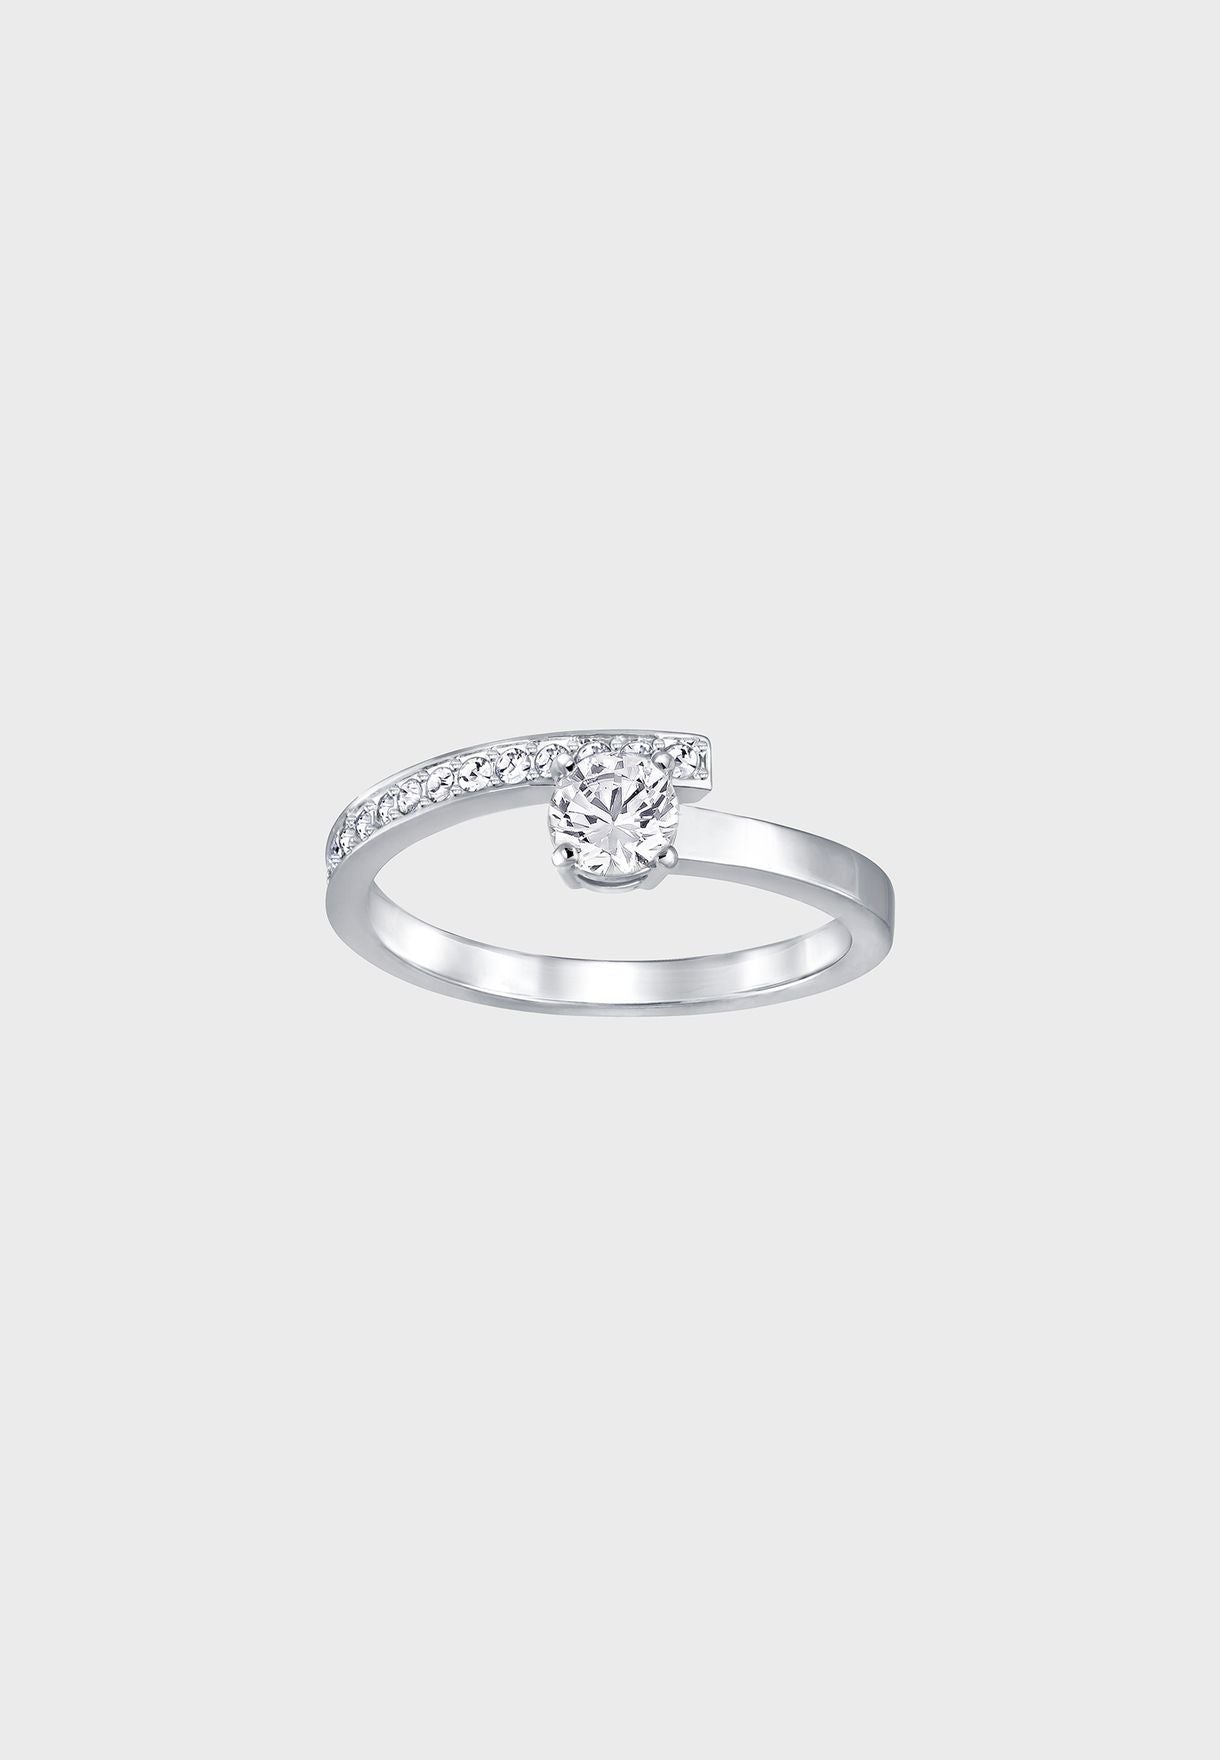 SWAROVSKI Fresh Ring - White, Rhodium Plated, Size 54 #5235634